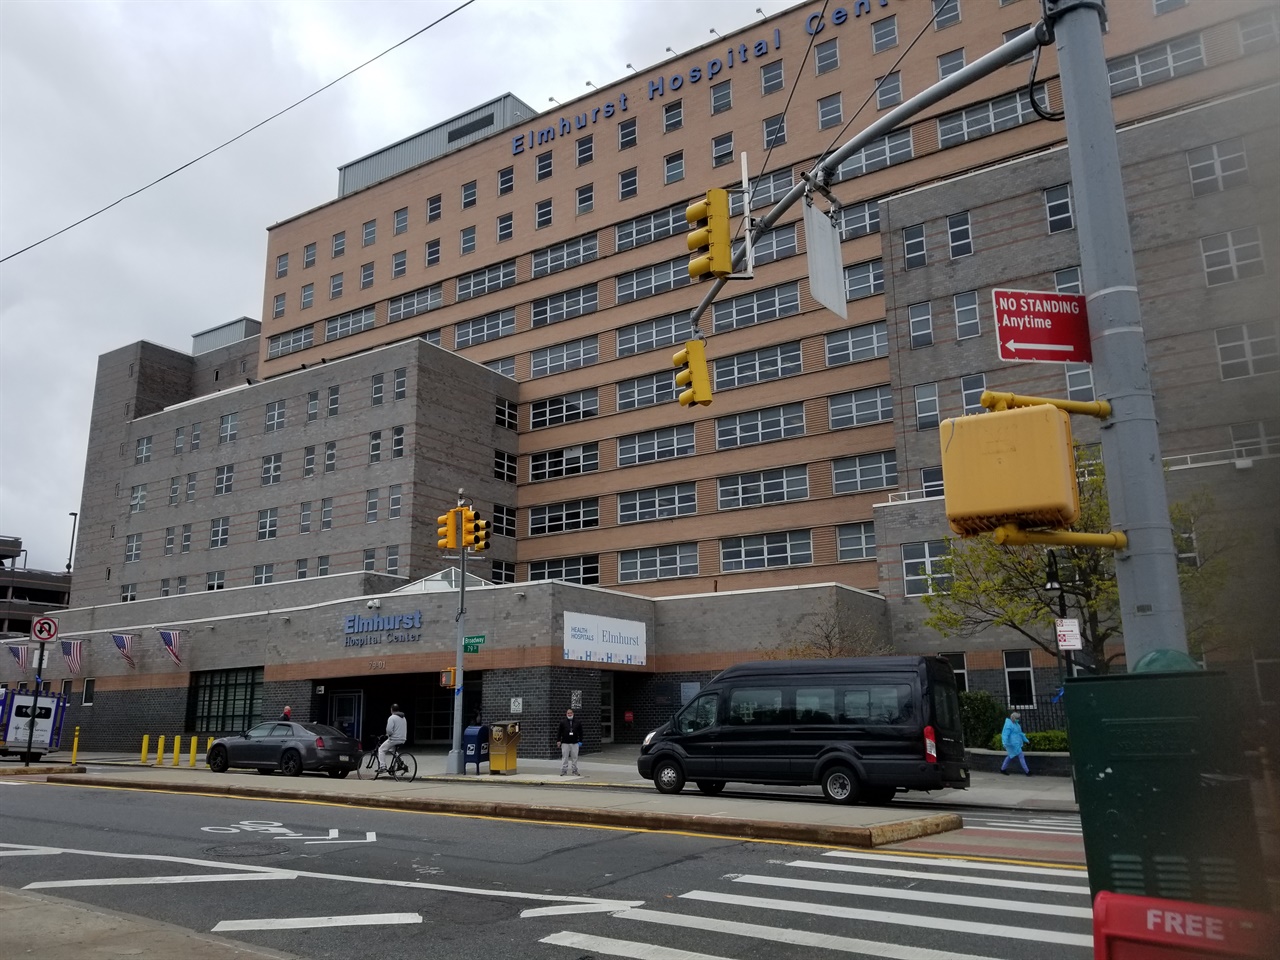 뉴욕시 퀸즈에 있는 이 병원에서 코로나19 가 한창 강세였던 때는 하루에 13명이나 사망자가 발생한 적도 있다. 서민 아파트가 많은 이 지역에는 코로나19 확진자가 유난히 많다. 자가격리 기간이라 길거리에는 차량이나 사람들이 별로 없다.